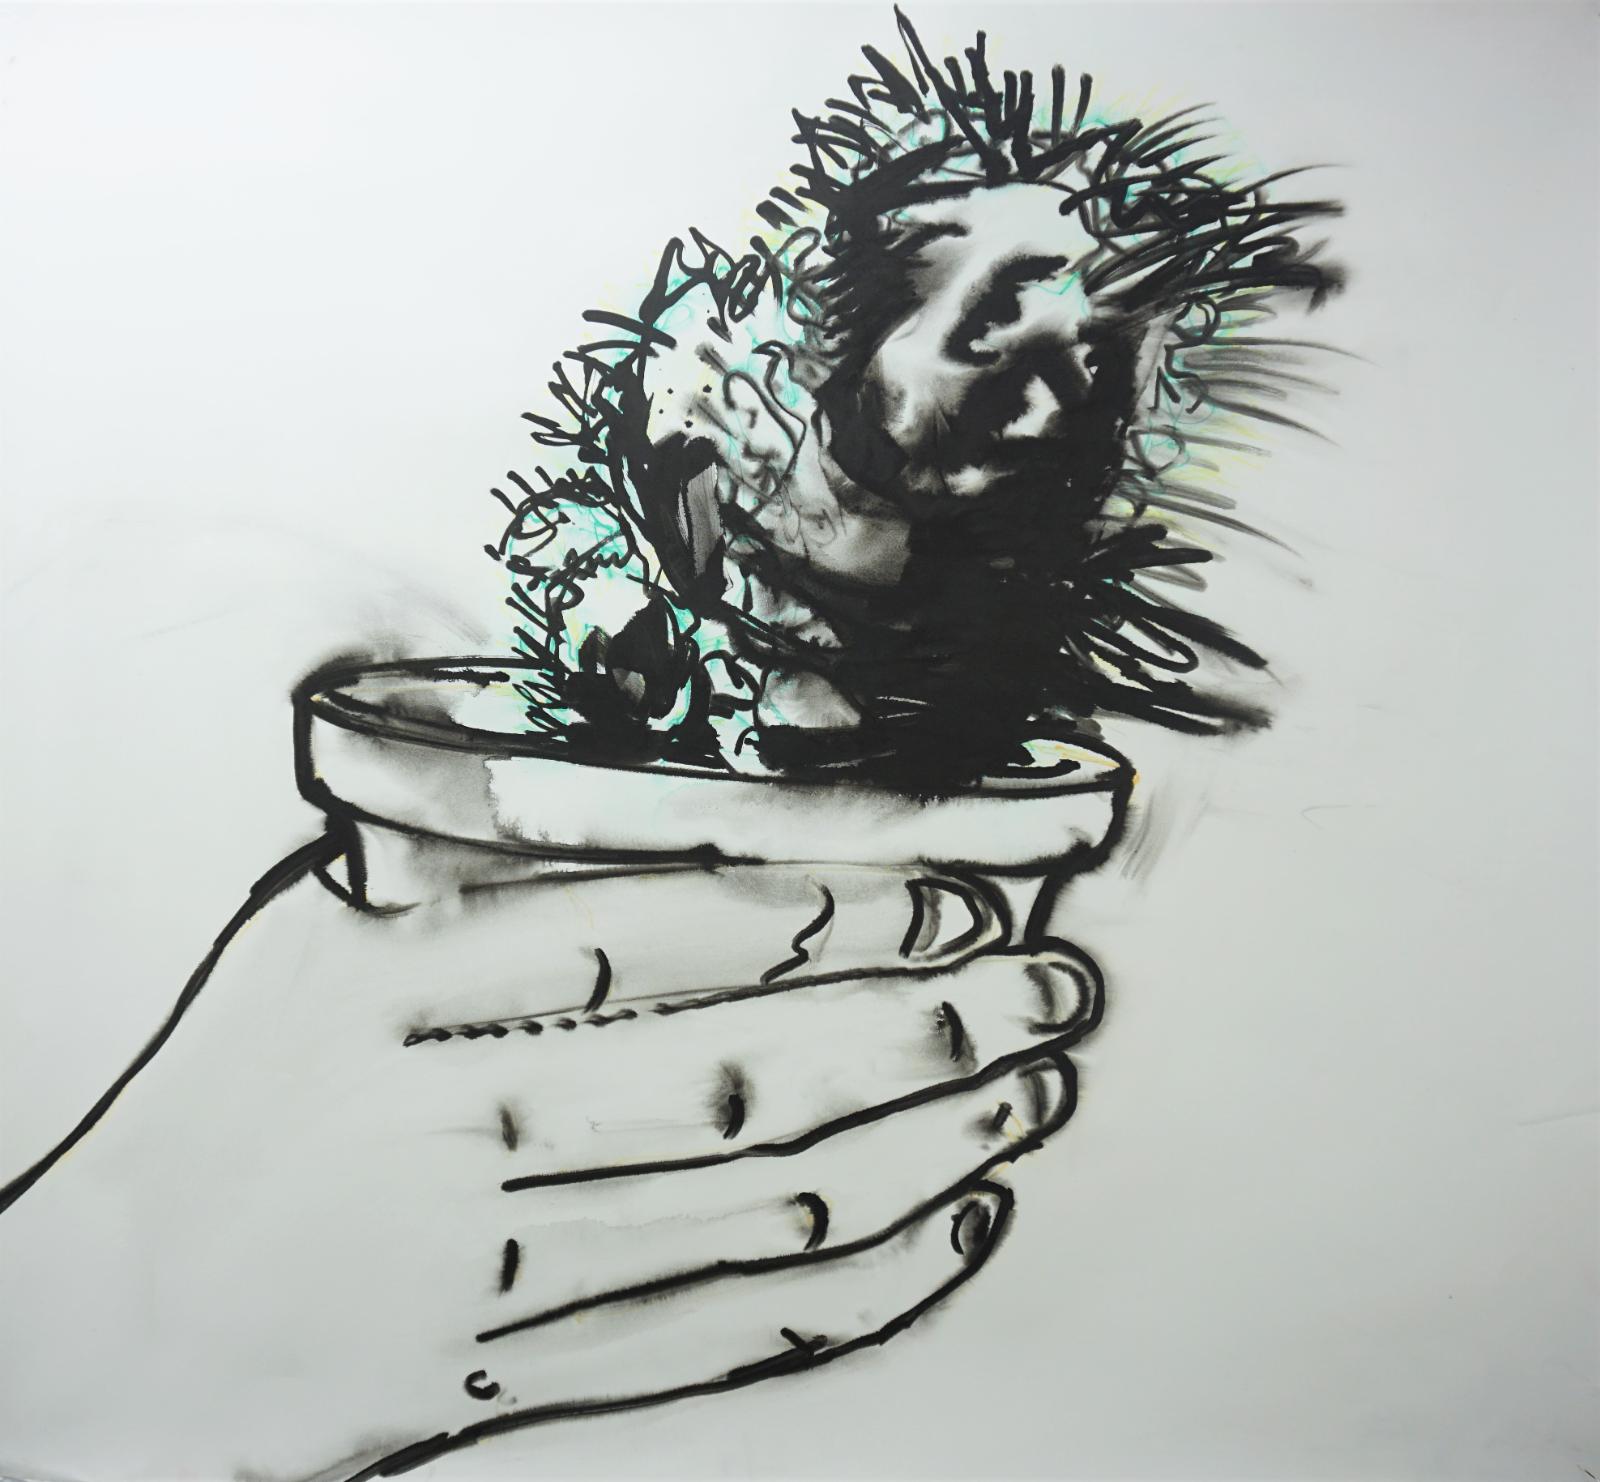 Daniel Wagenblast, kaktus 2, 2018, Zeichnung, 115 x 126 cm, Preis auf Anfrage, Galerie Cyprian Brenner